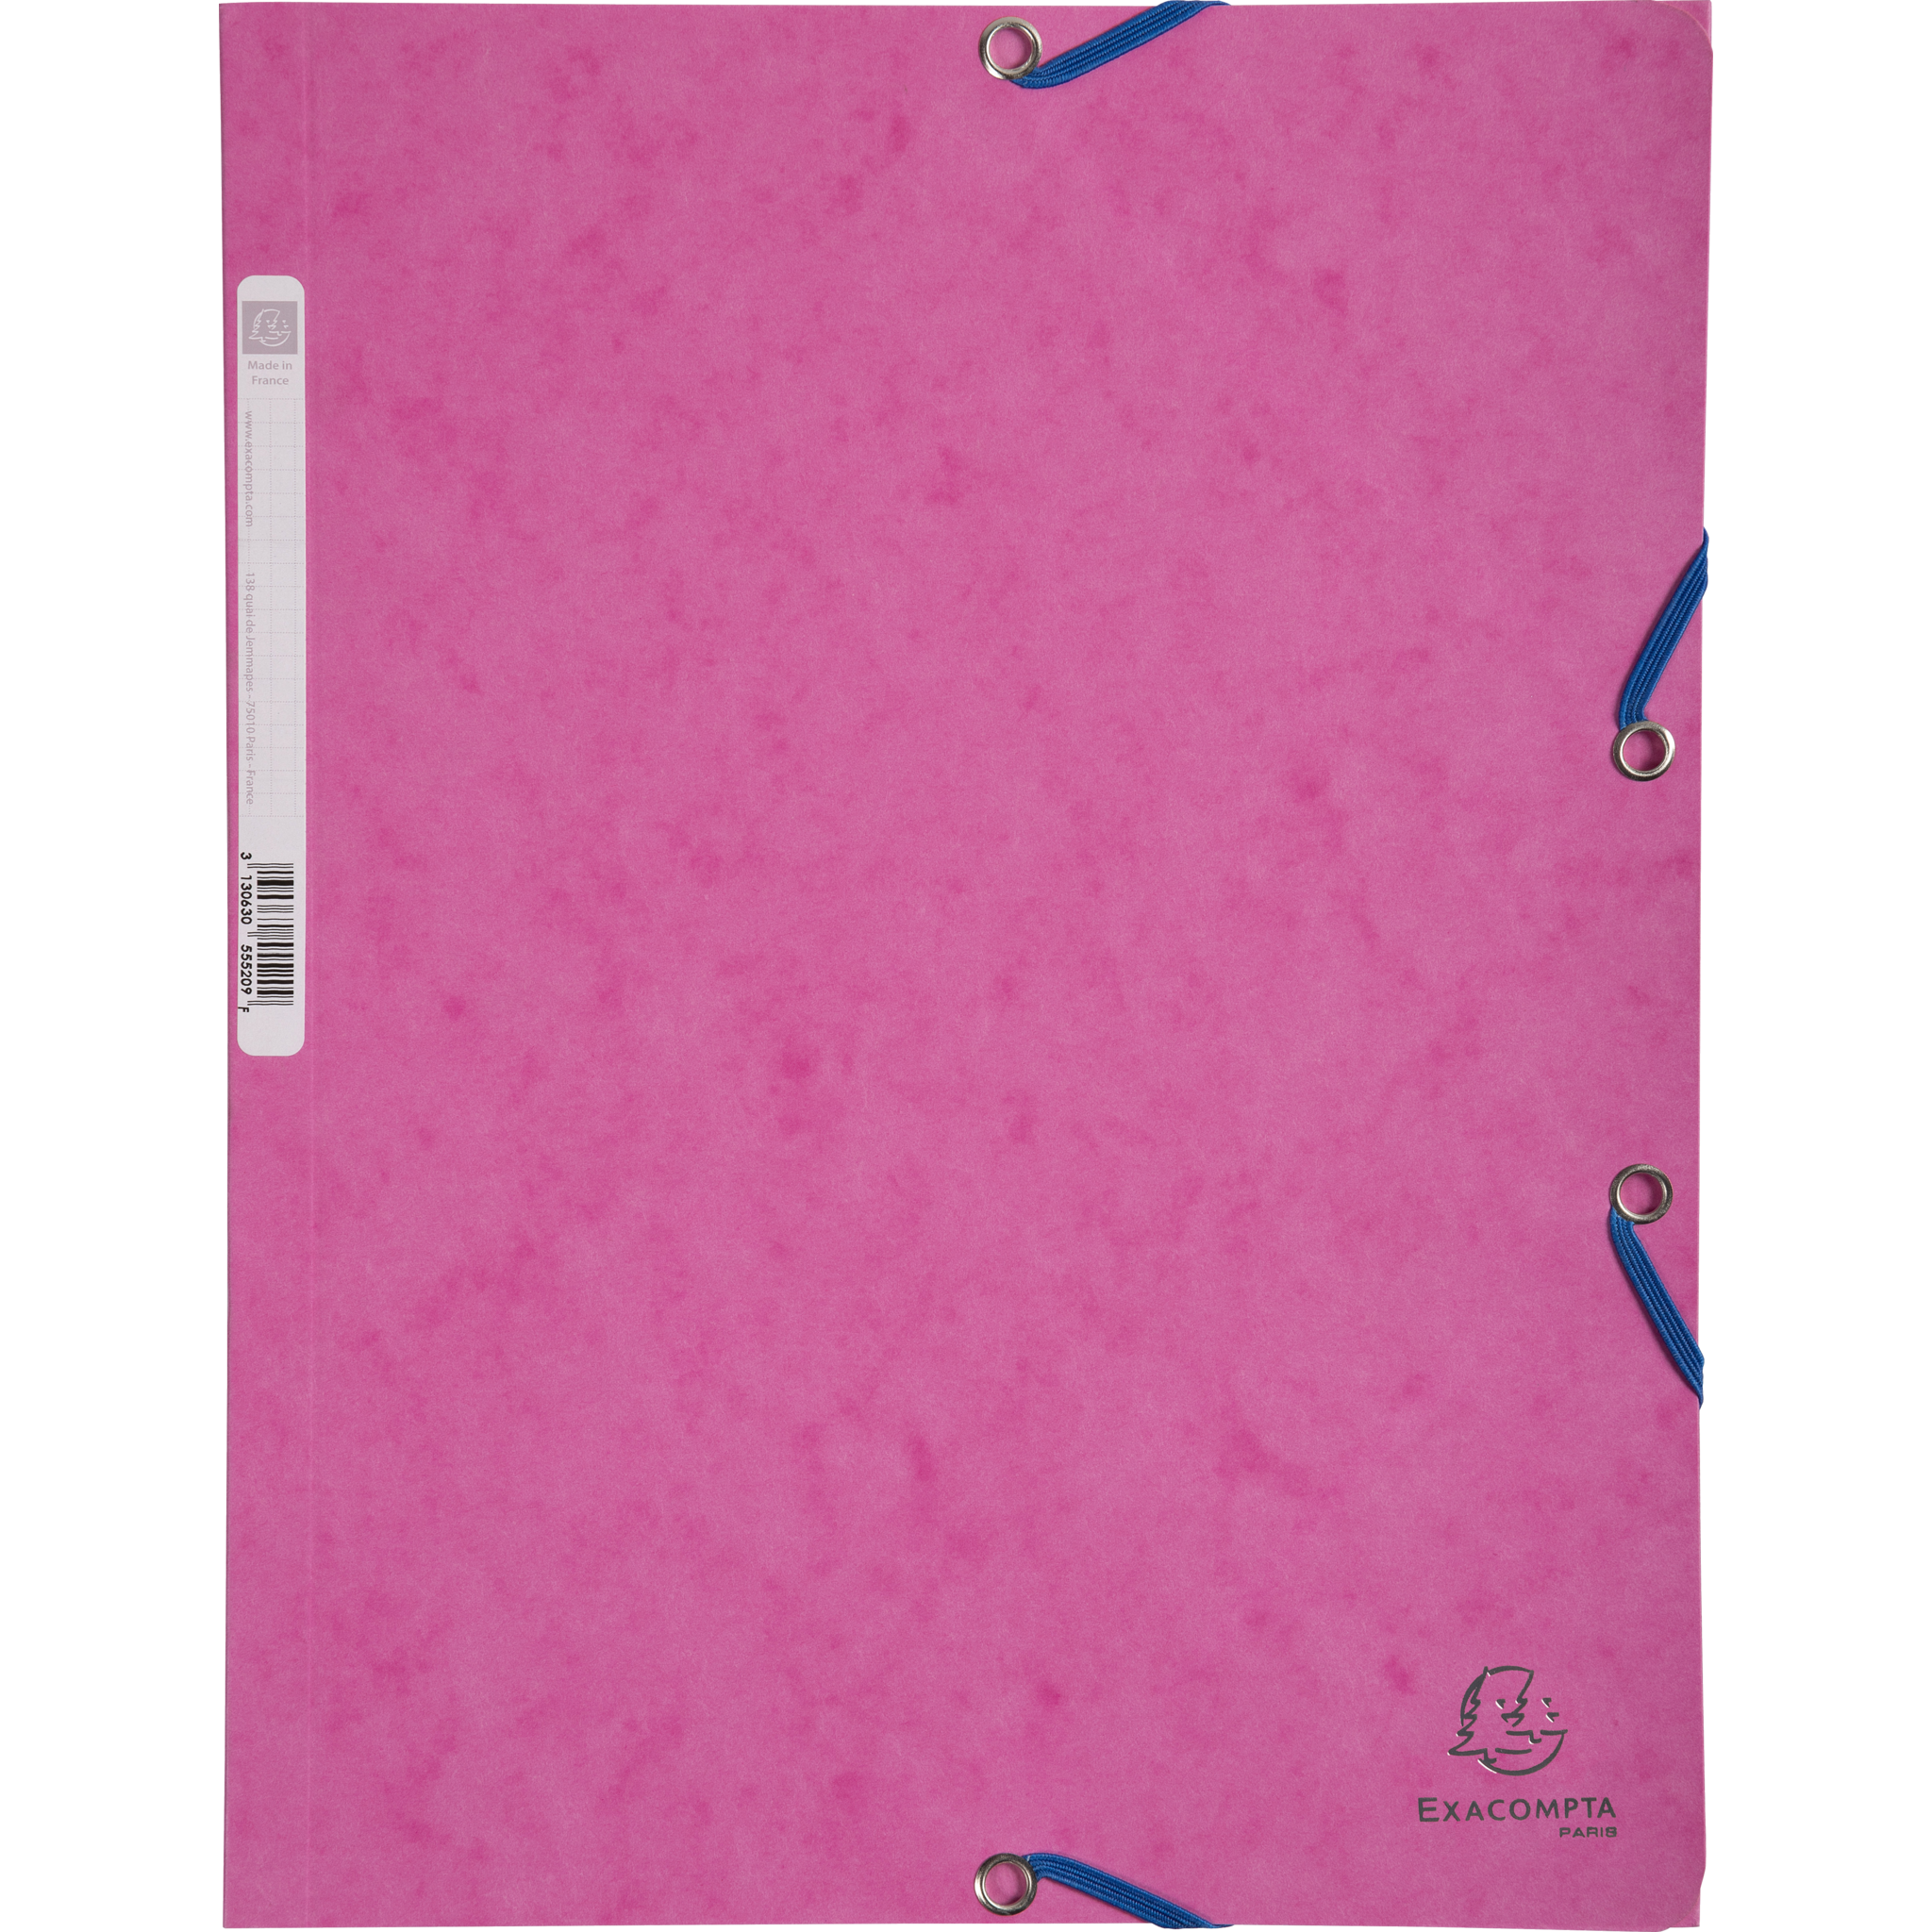 EXACOMPTA Sammelmappen mit Gummizug und 3 Klappen, Colorspan-Karton 400g/m2, für DIN A4 - Pink